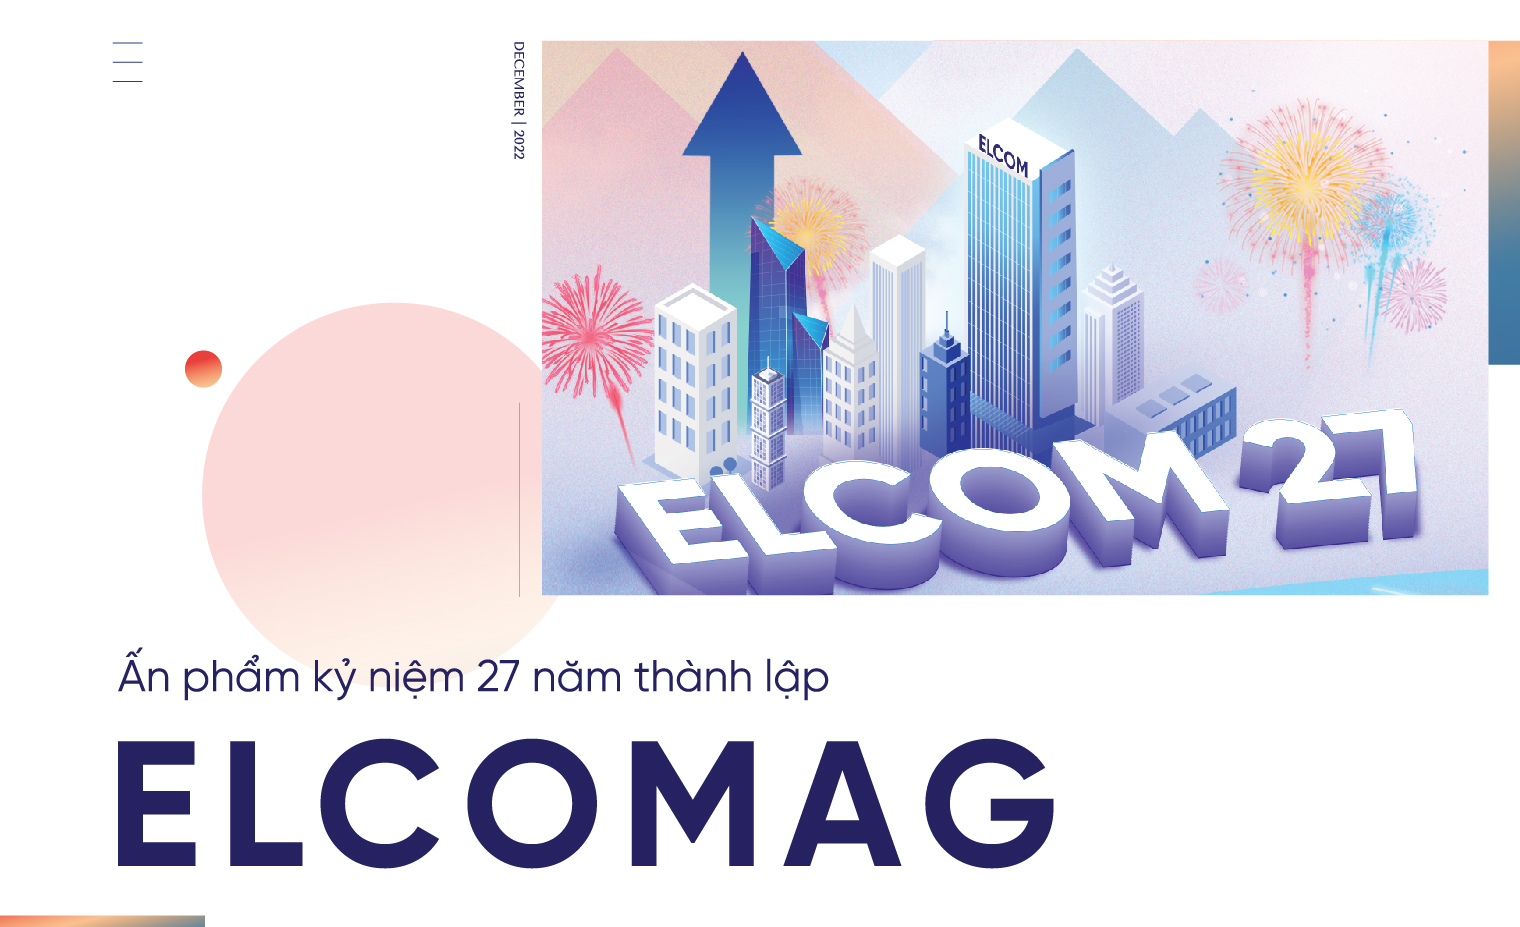 Ấn phẩm kỷ niệm 27 năm ngày thành lập - Elcomag: Chuyện Elcom 27